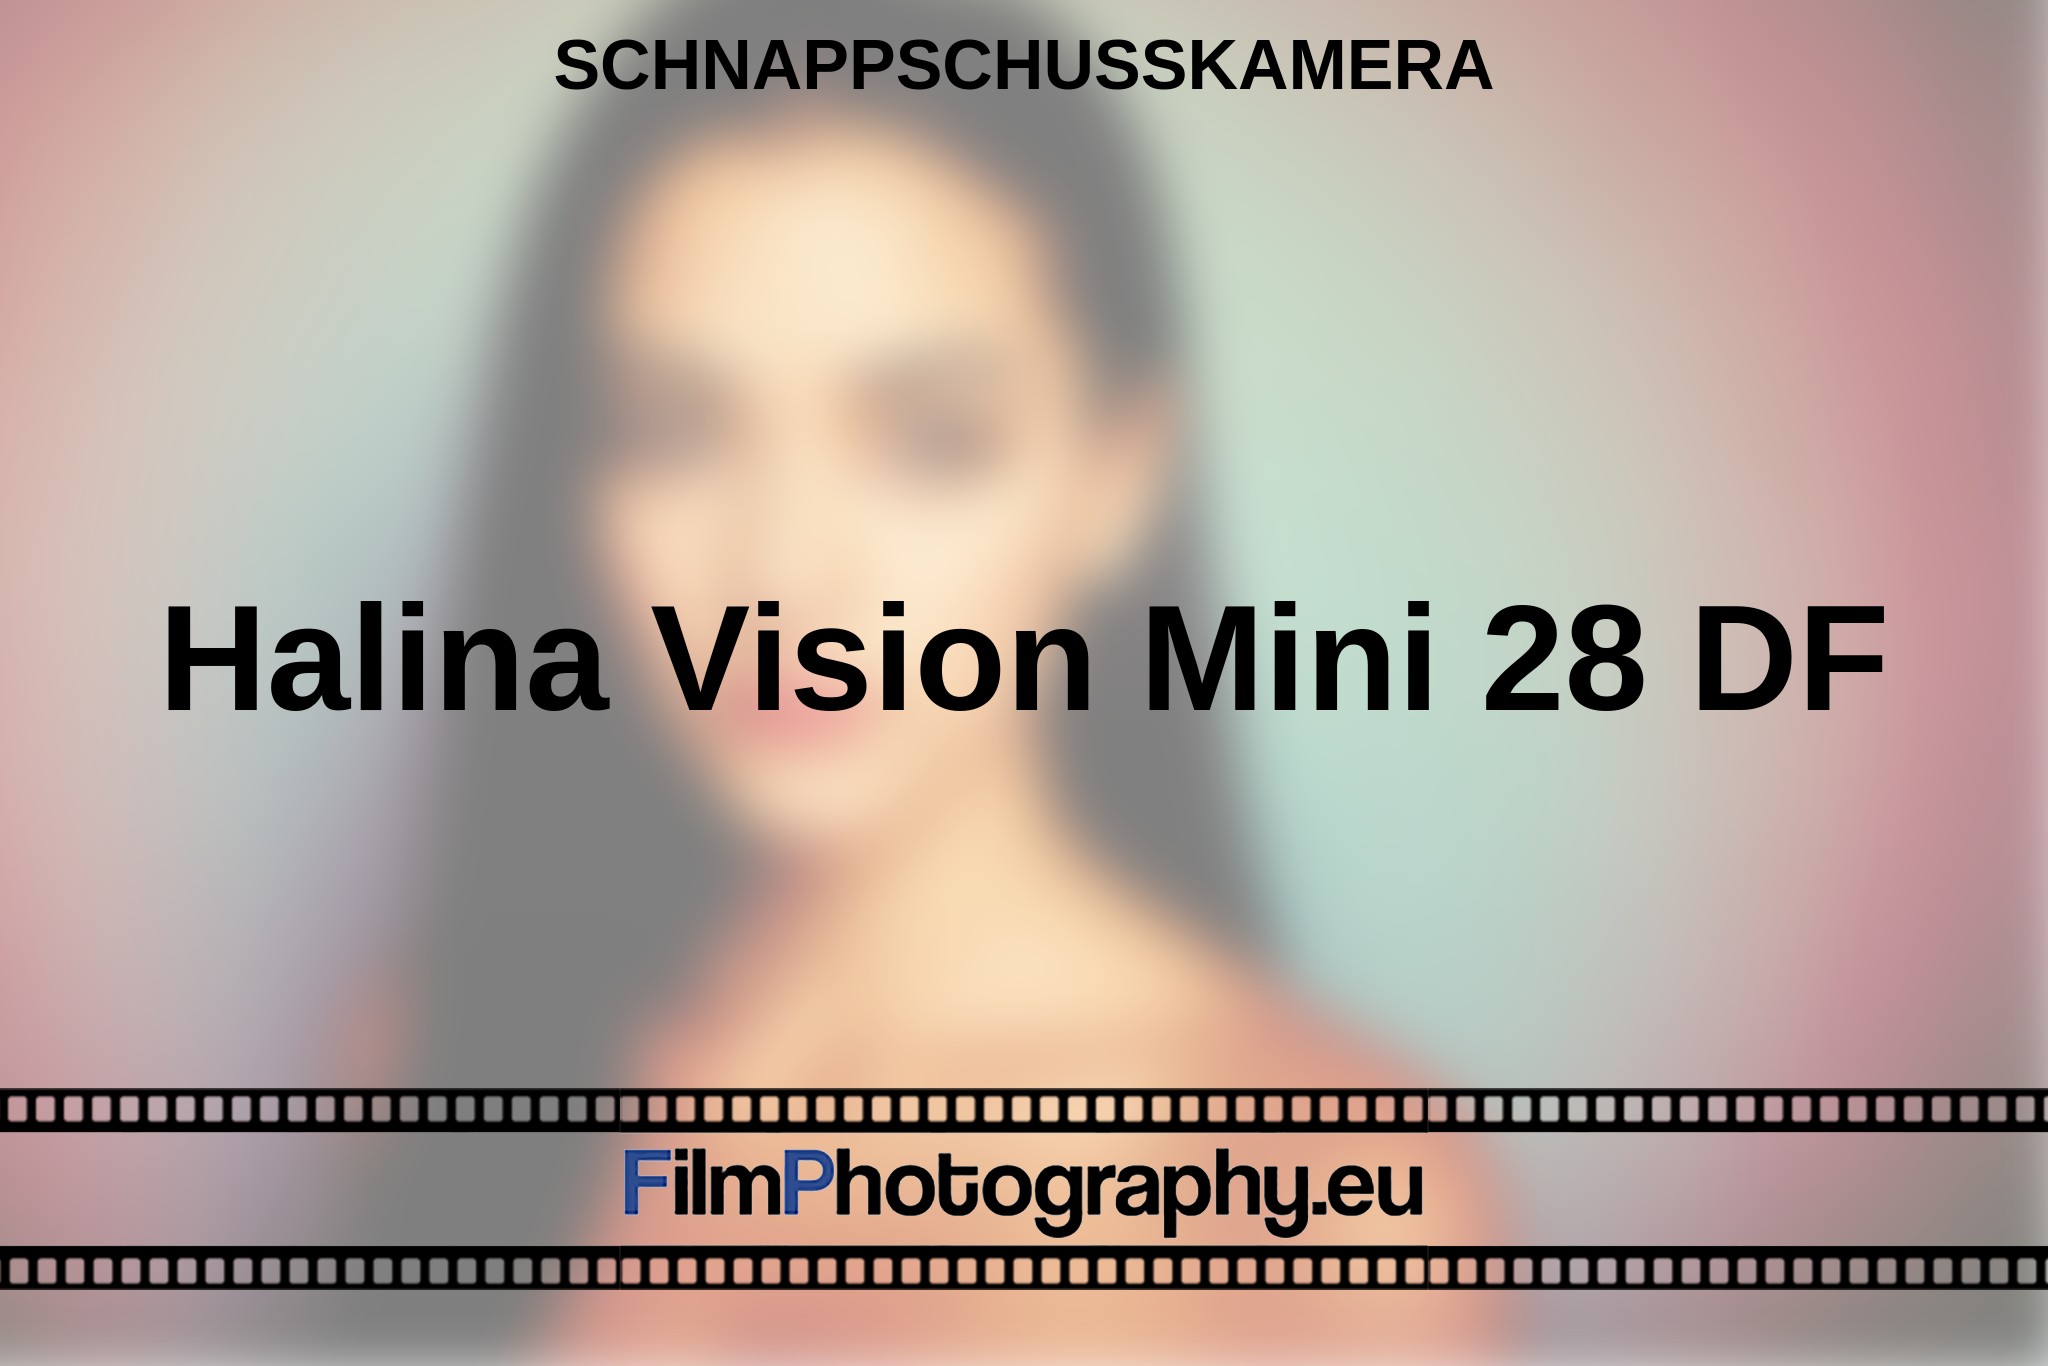 halina-vision-mini-28-df-schnappschusskamera-bnv.jpg